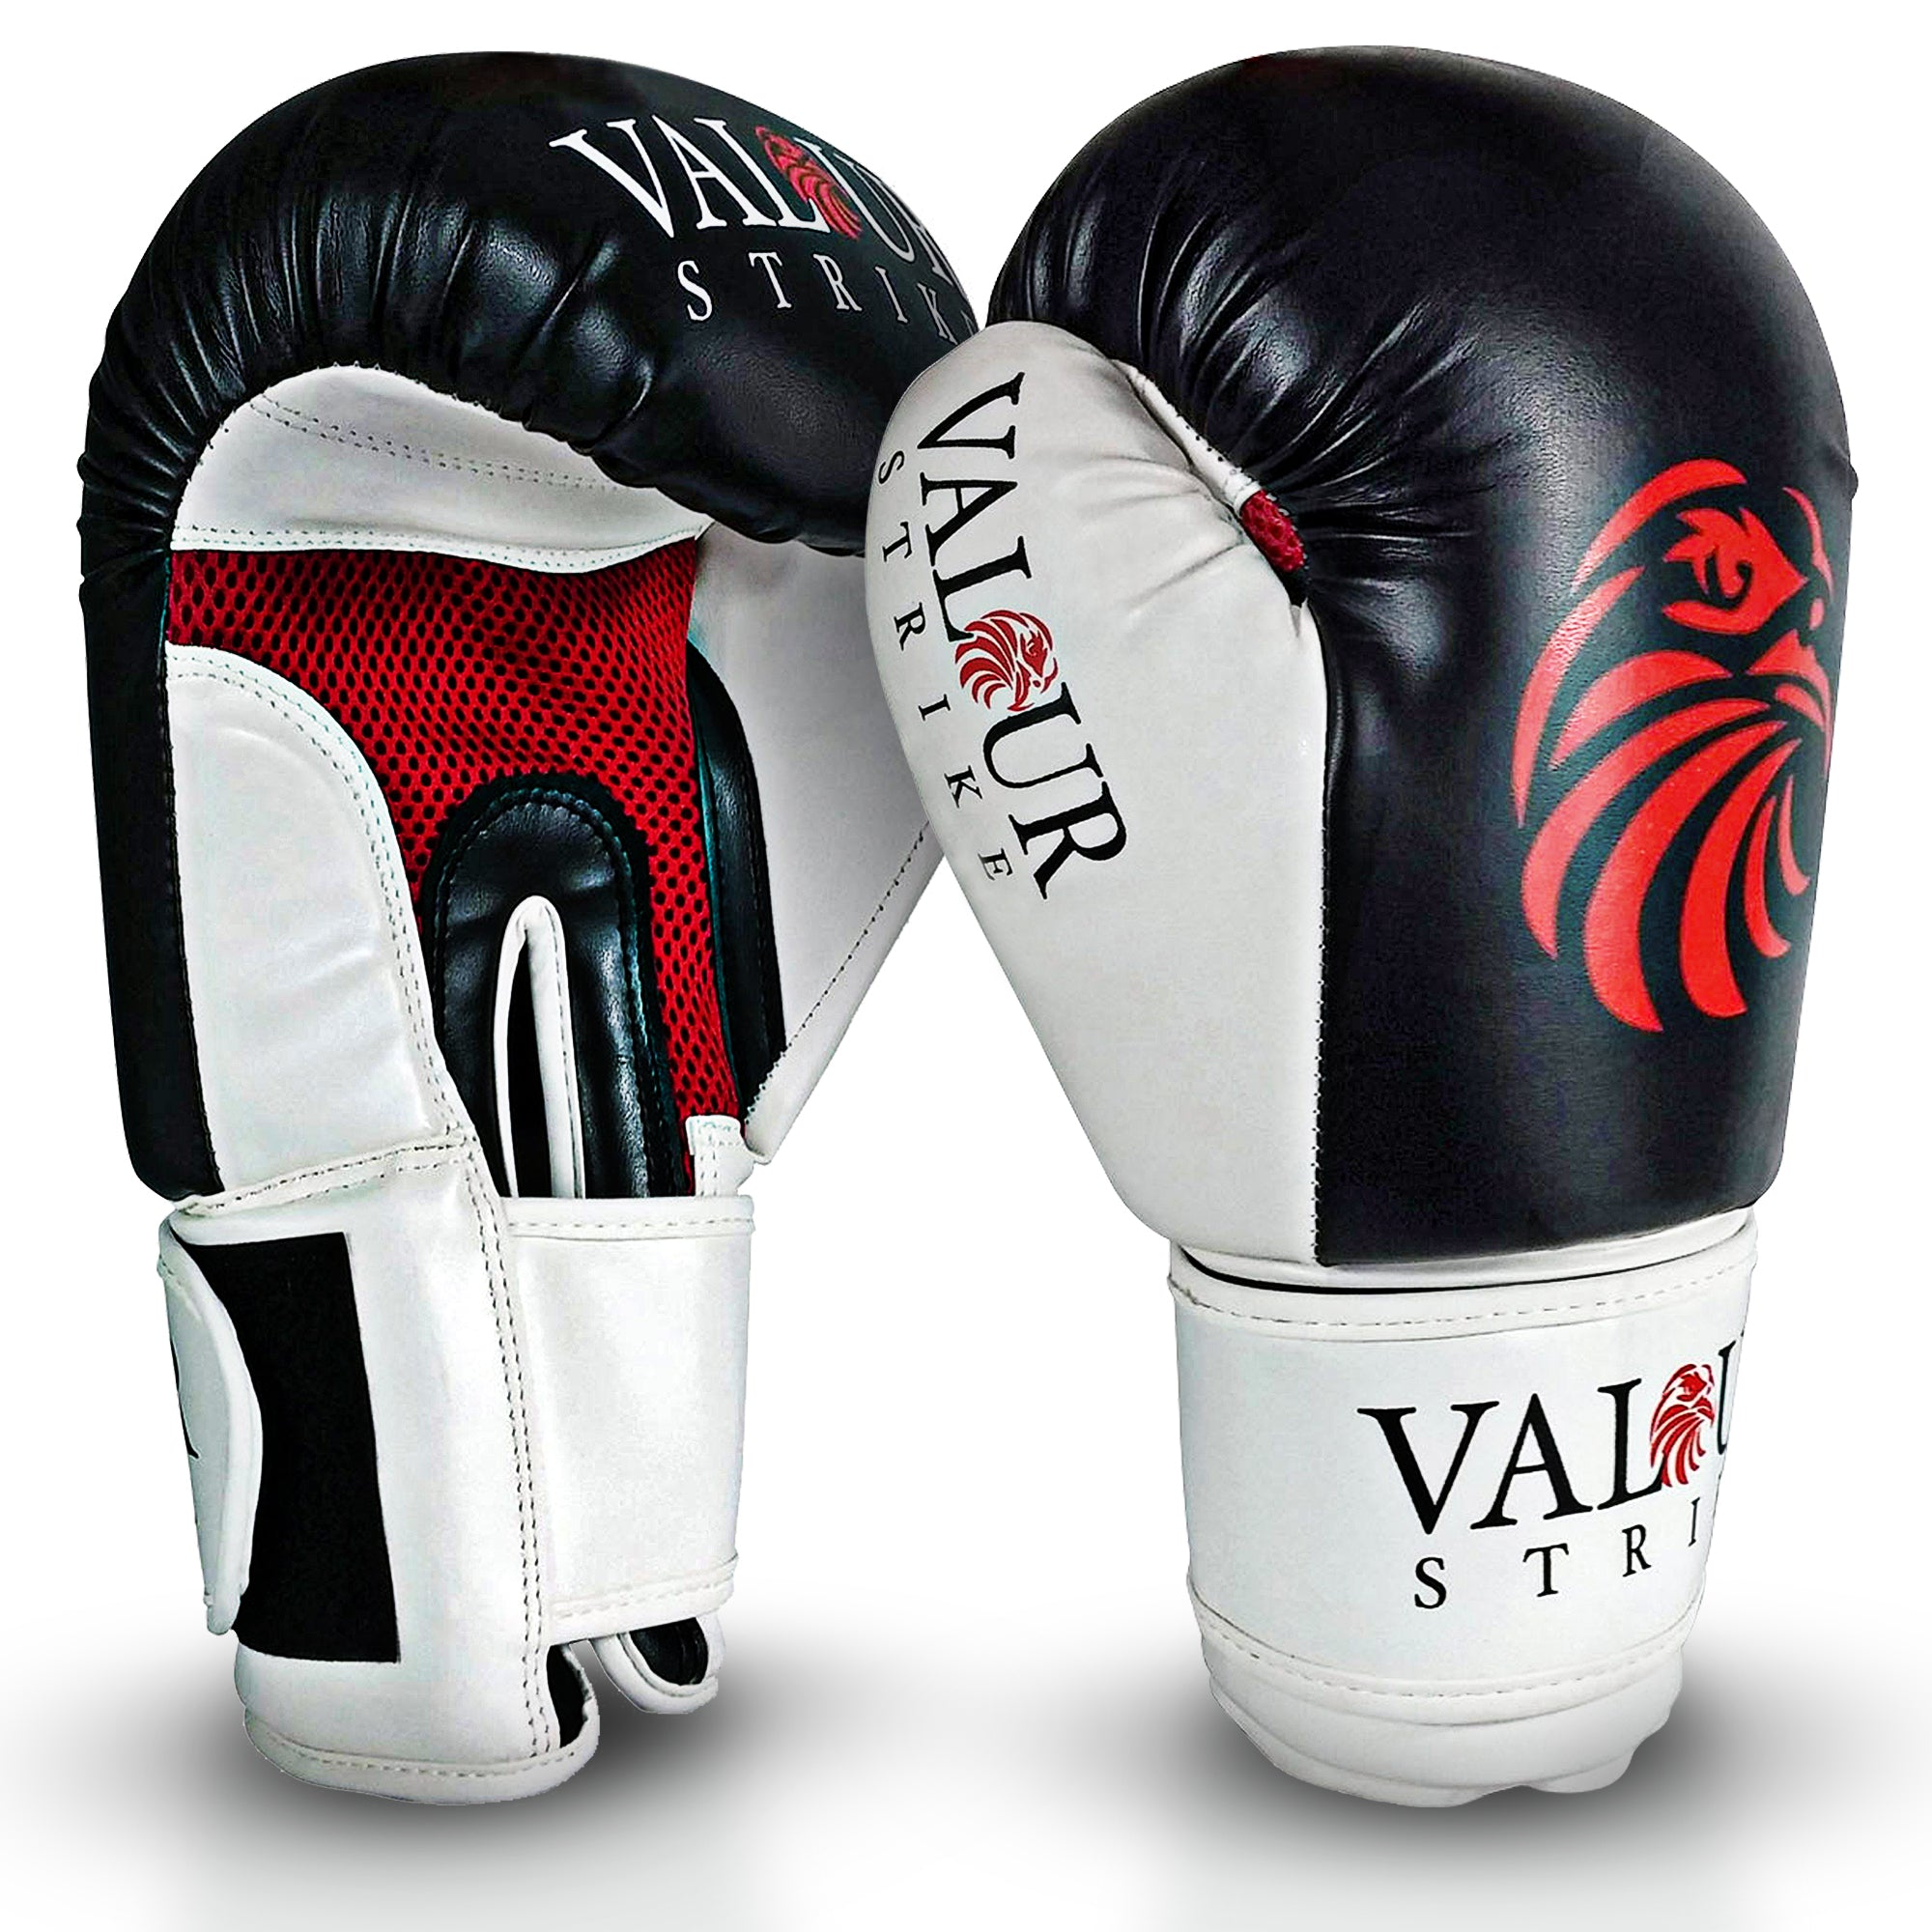 Valour Strike Original Boxing Gloves, Black Gloves